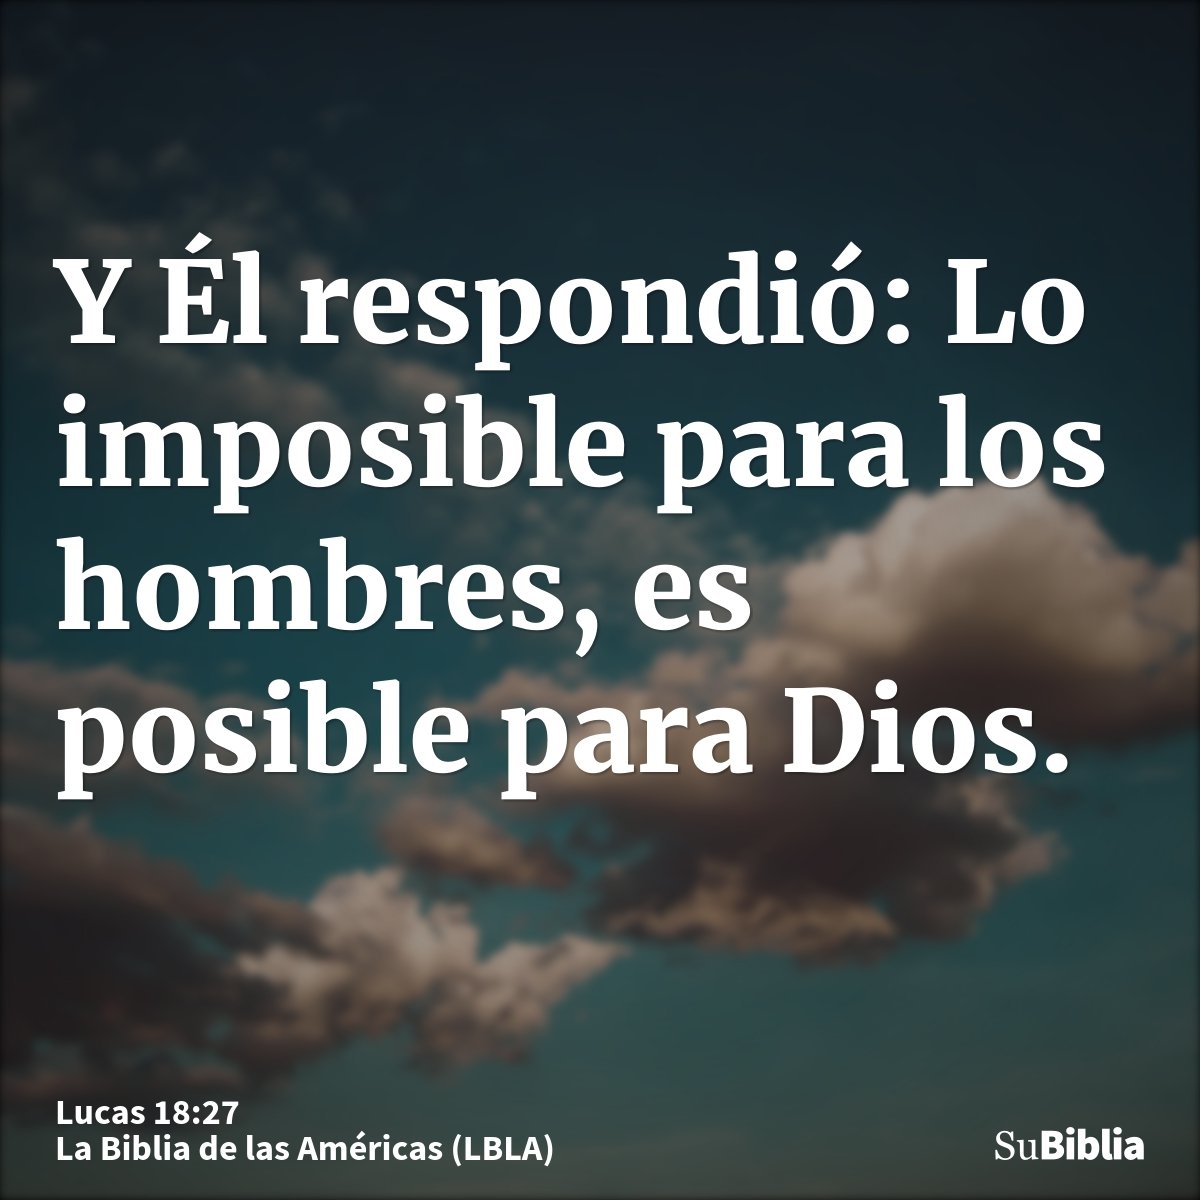 Y Él respondió: Lo imposible para los hombres, es posible para Dios.